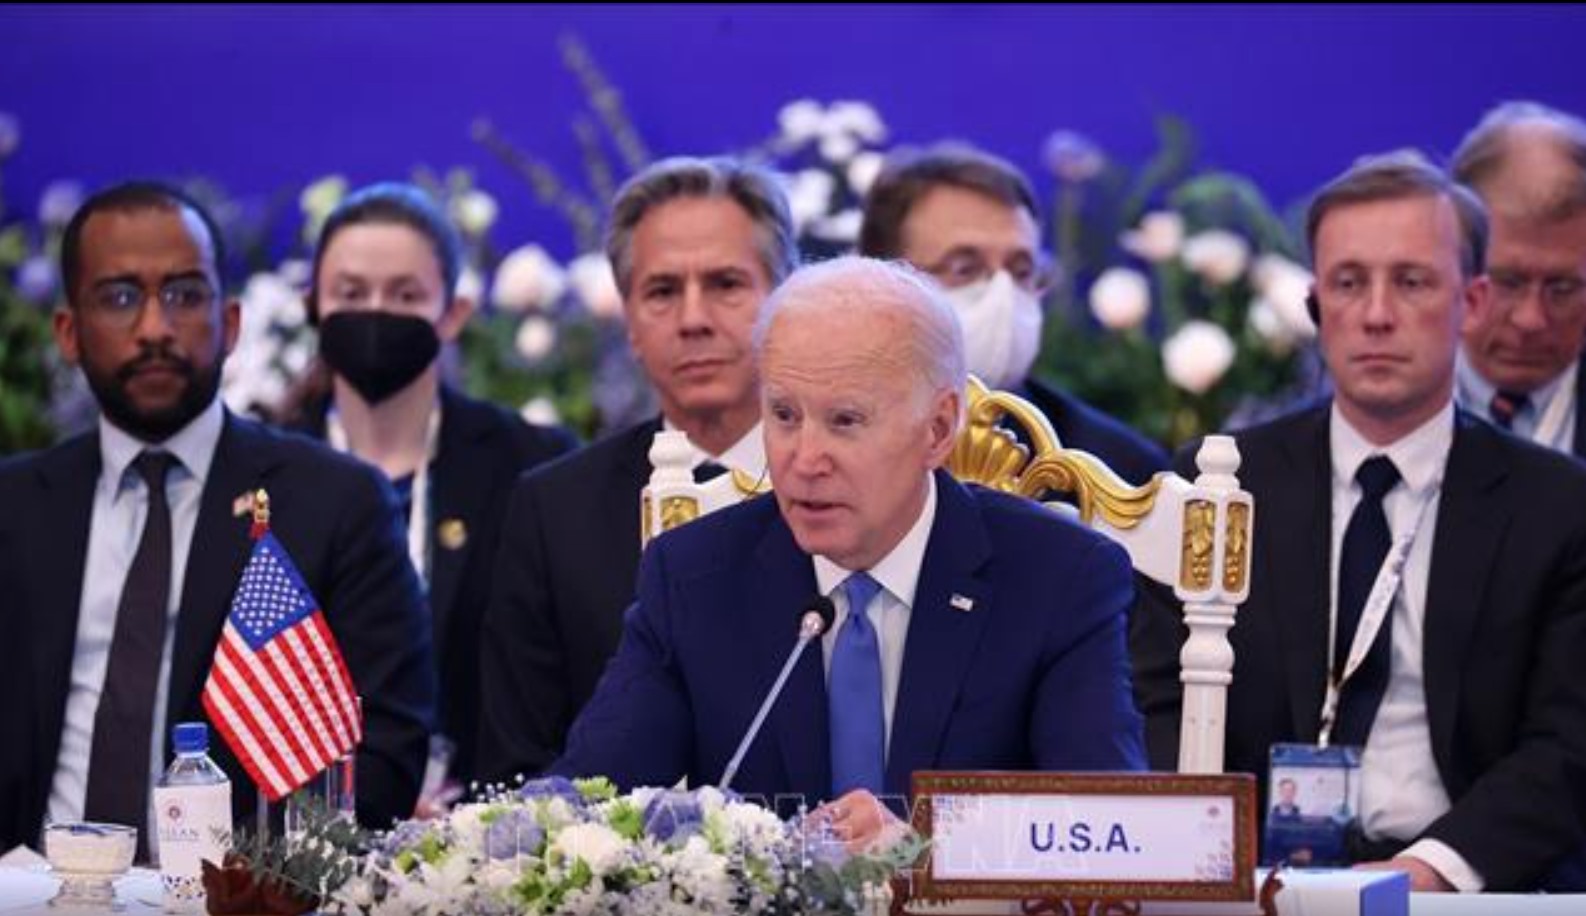 ประธานาธิบดีโจ ไบเดน กล่าวสุนทรพจน์ในการประชุมสุดยอดอาเซียน-สหรัฐฯ ครั้งที่ 10  ภาพถ่าย: “VNA .”